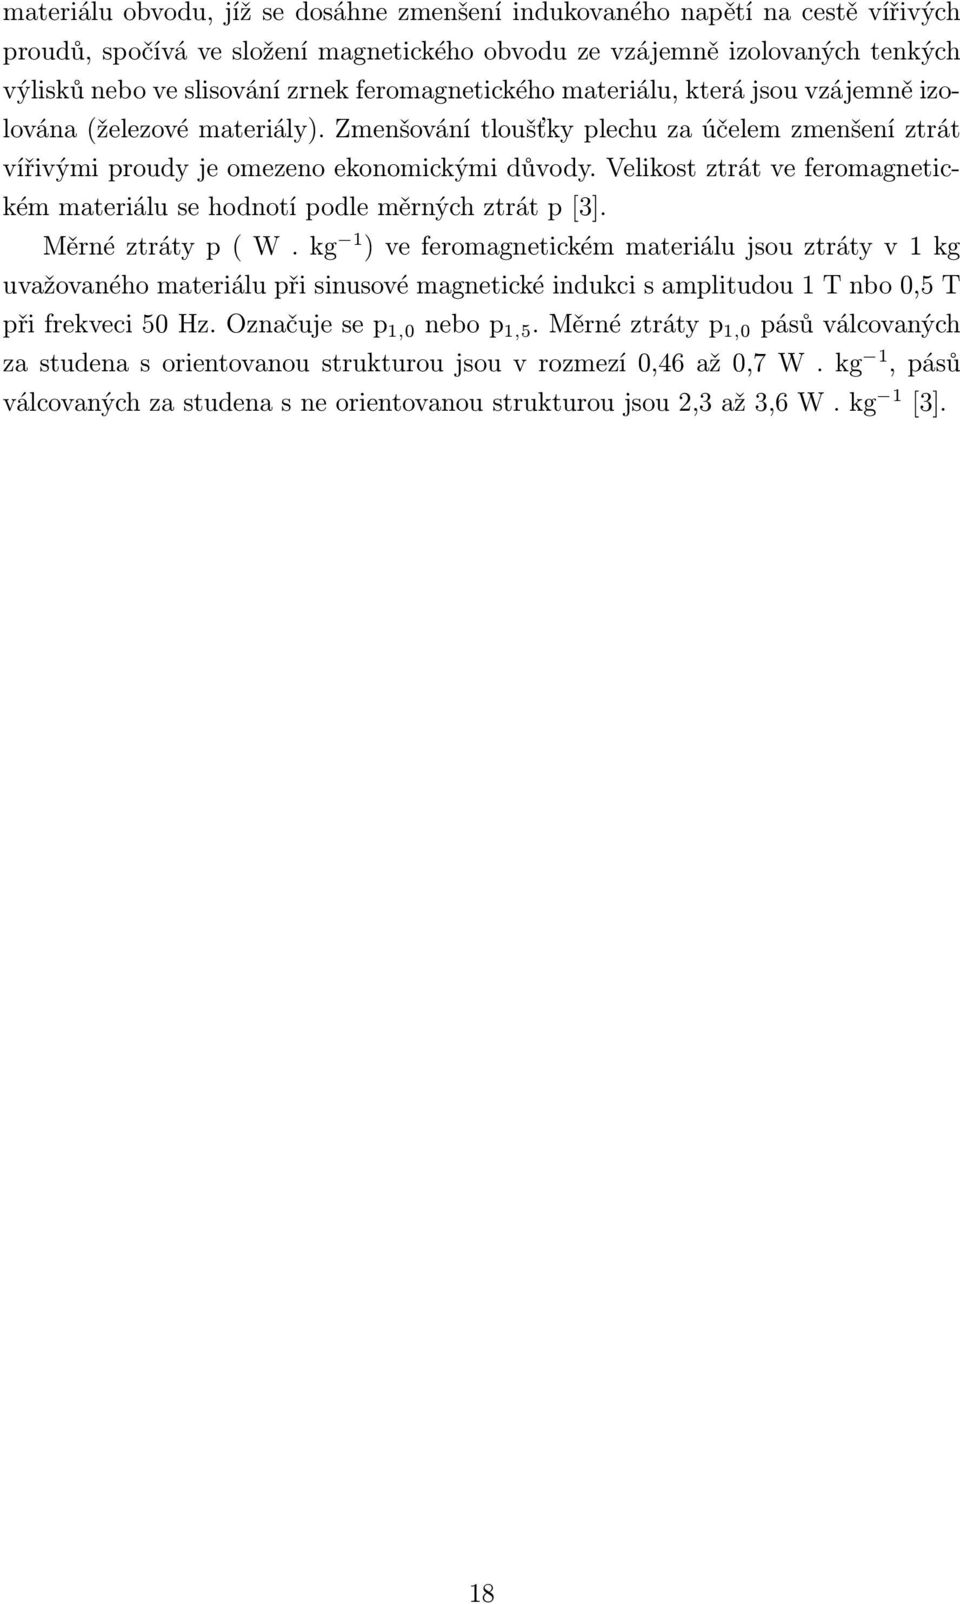 Velikost ztrát ve feromagnetickém materiálu se hodnotí podle měrných ztrát p [3]. Měrné ztráty p ( W.